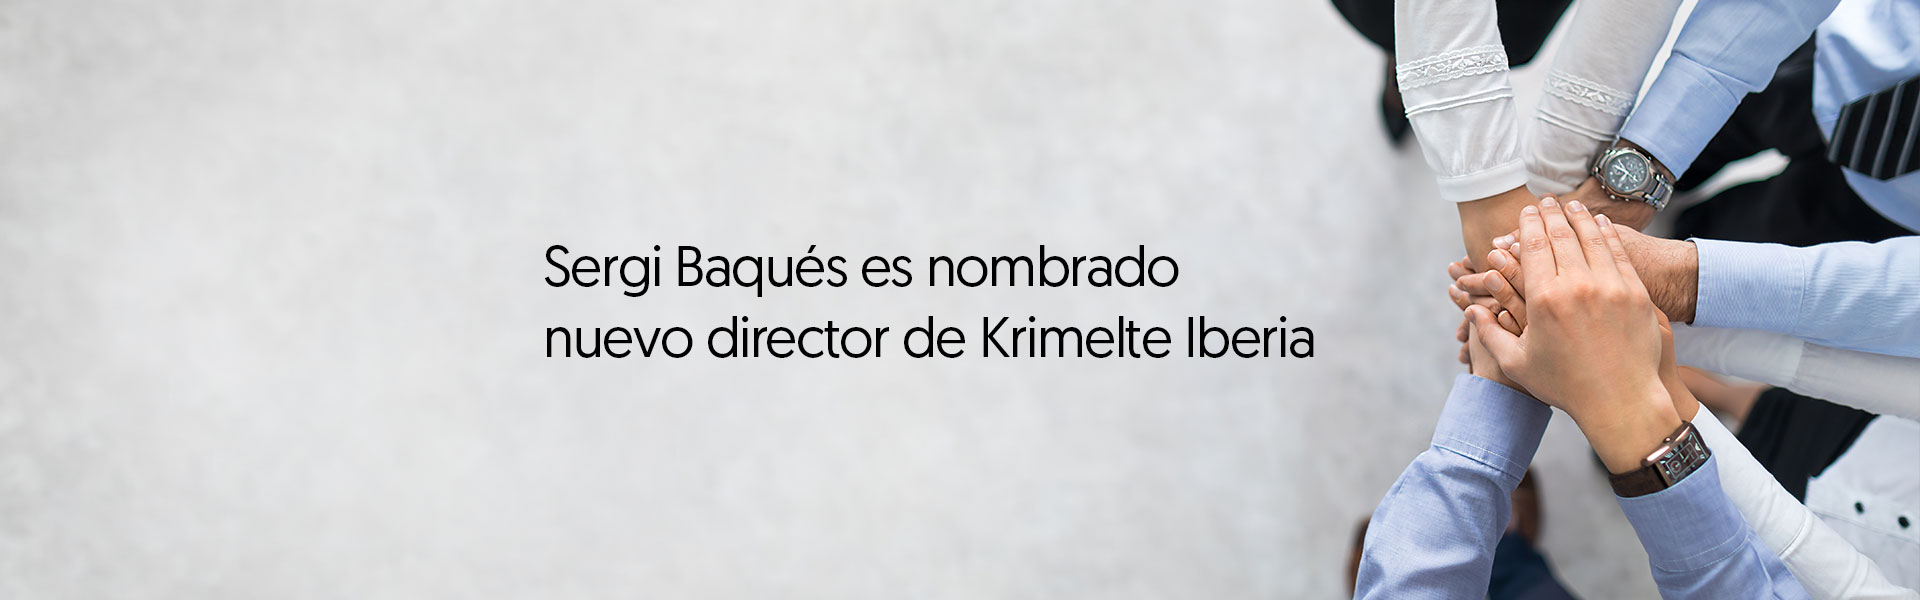 Sergi Baqués es nombrado nuevo director de Krimelte Iberia